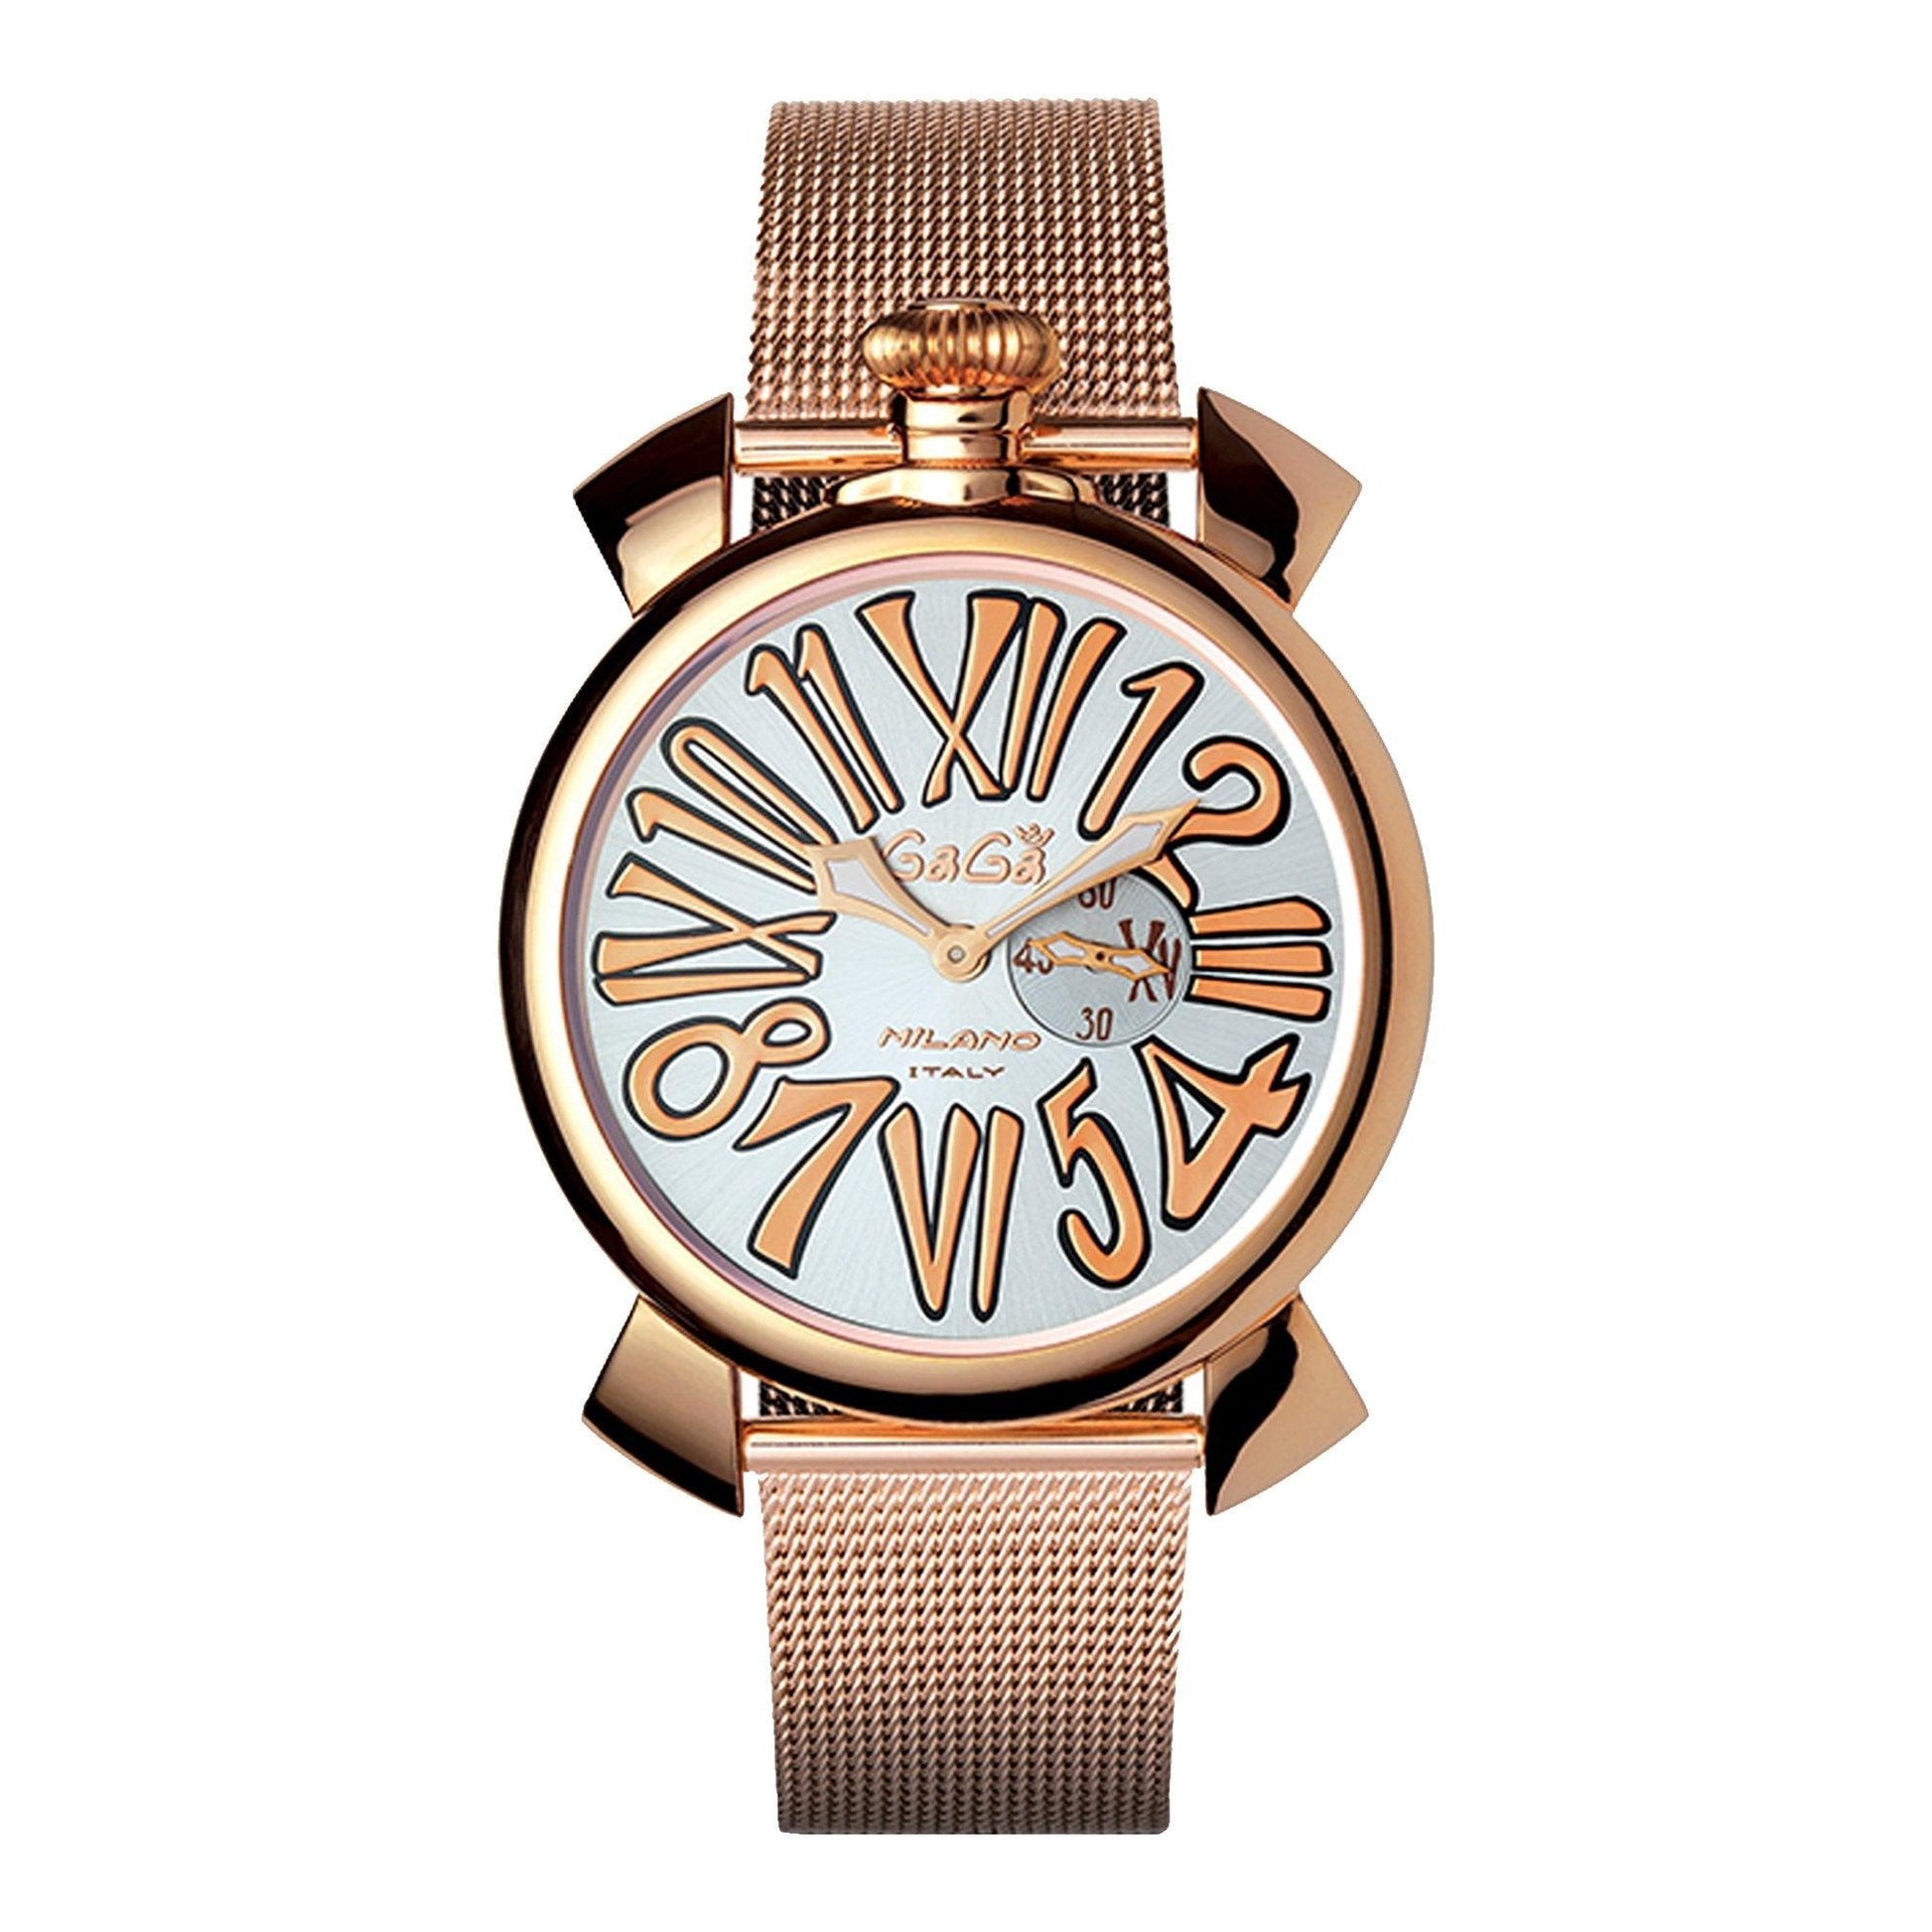 Gagà Milano Rose Gold Plated 50812 orologio uomo al quarzo - Kechiq Concept Boutique